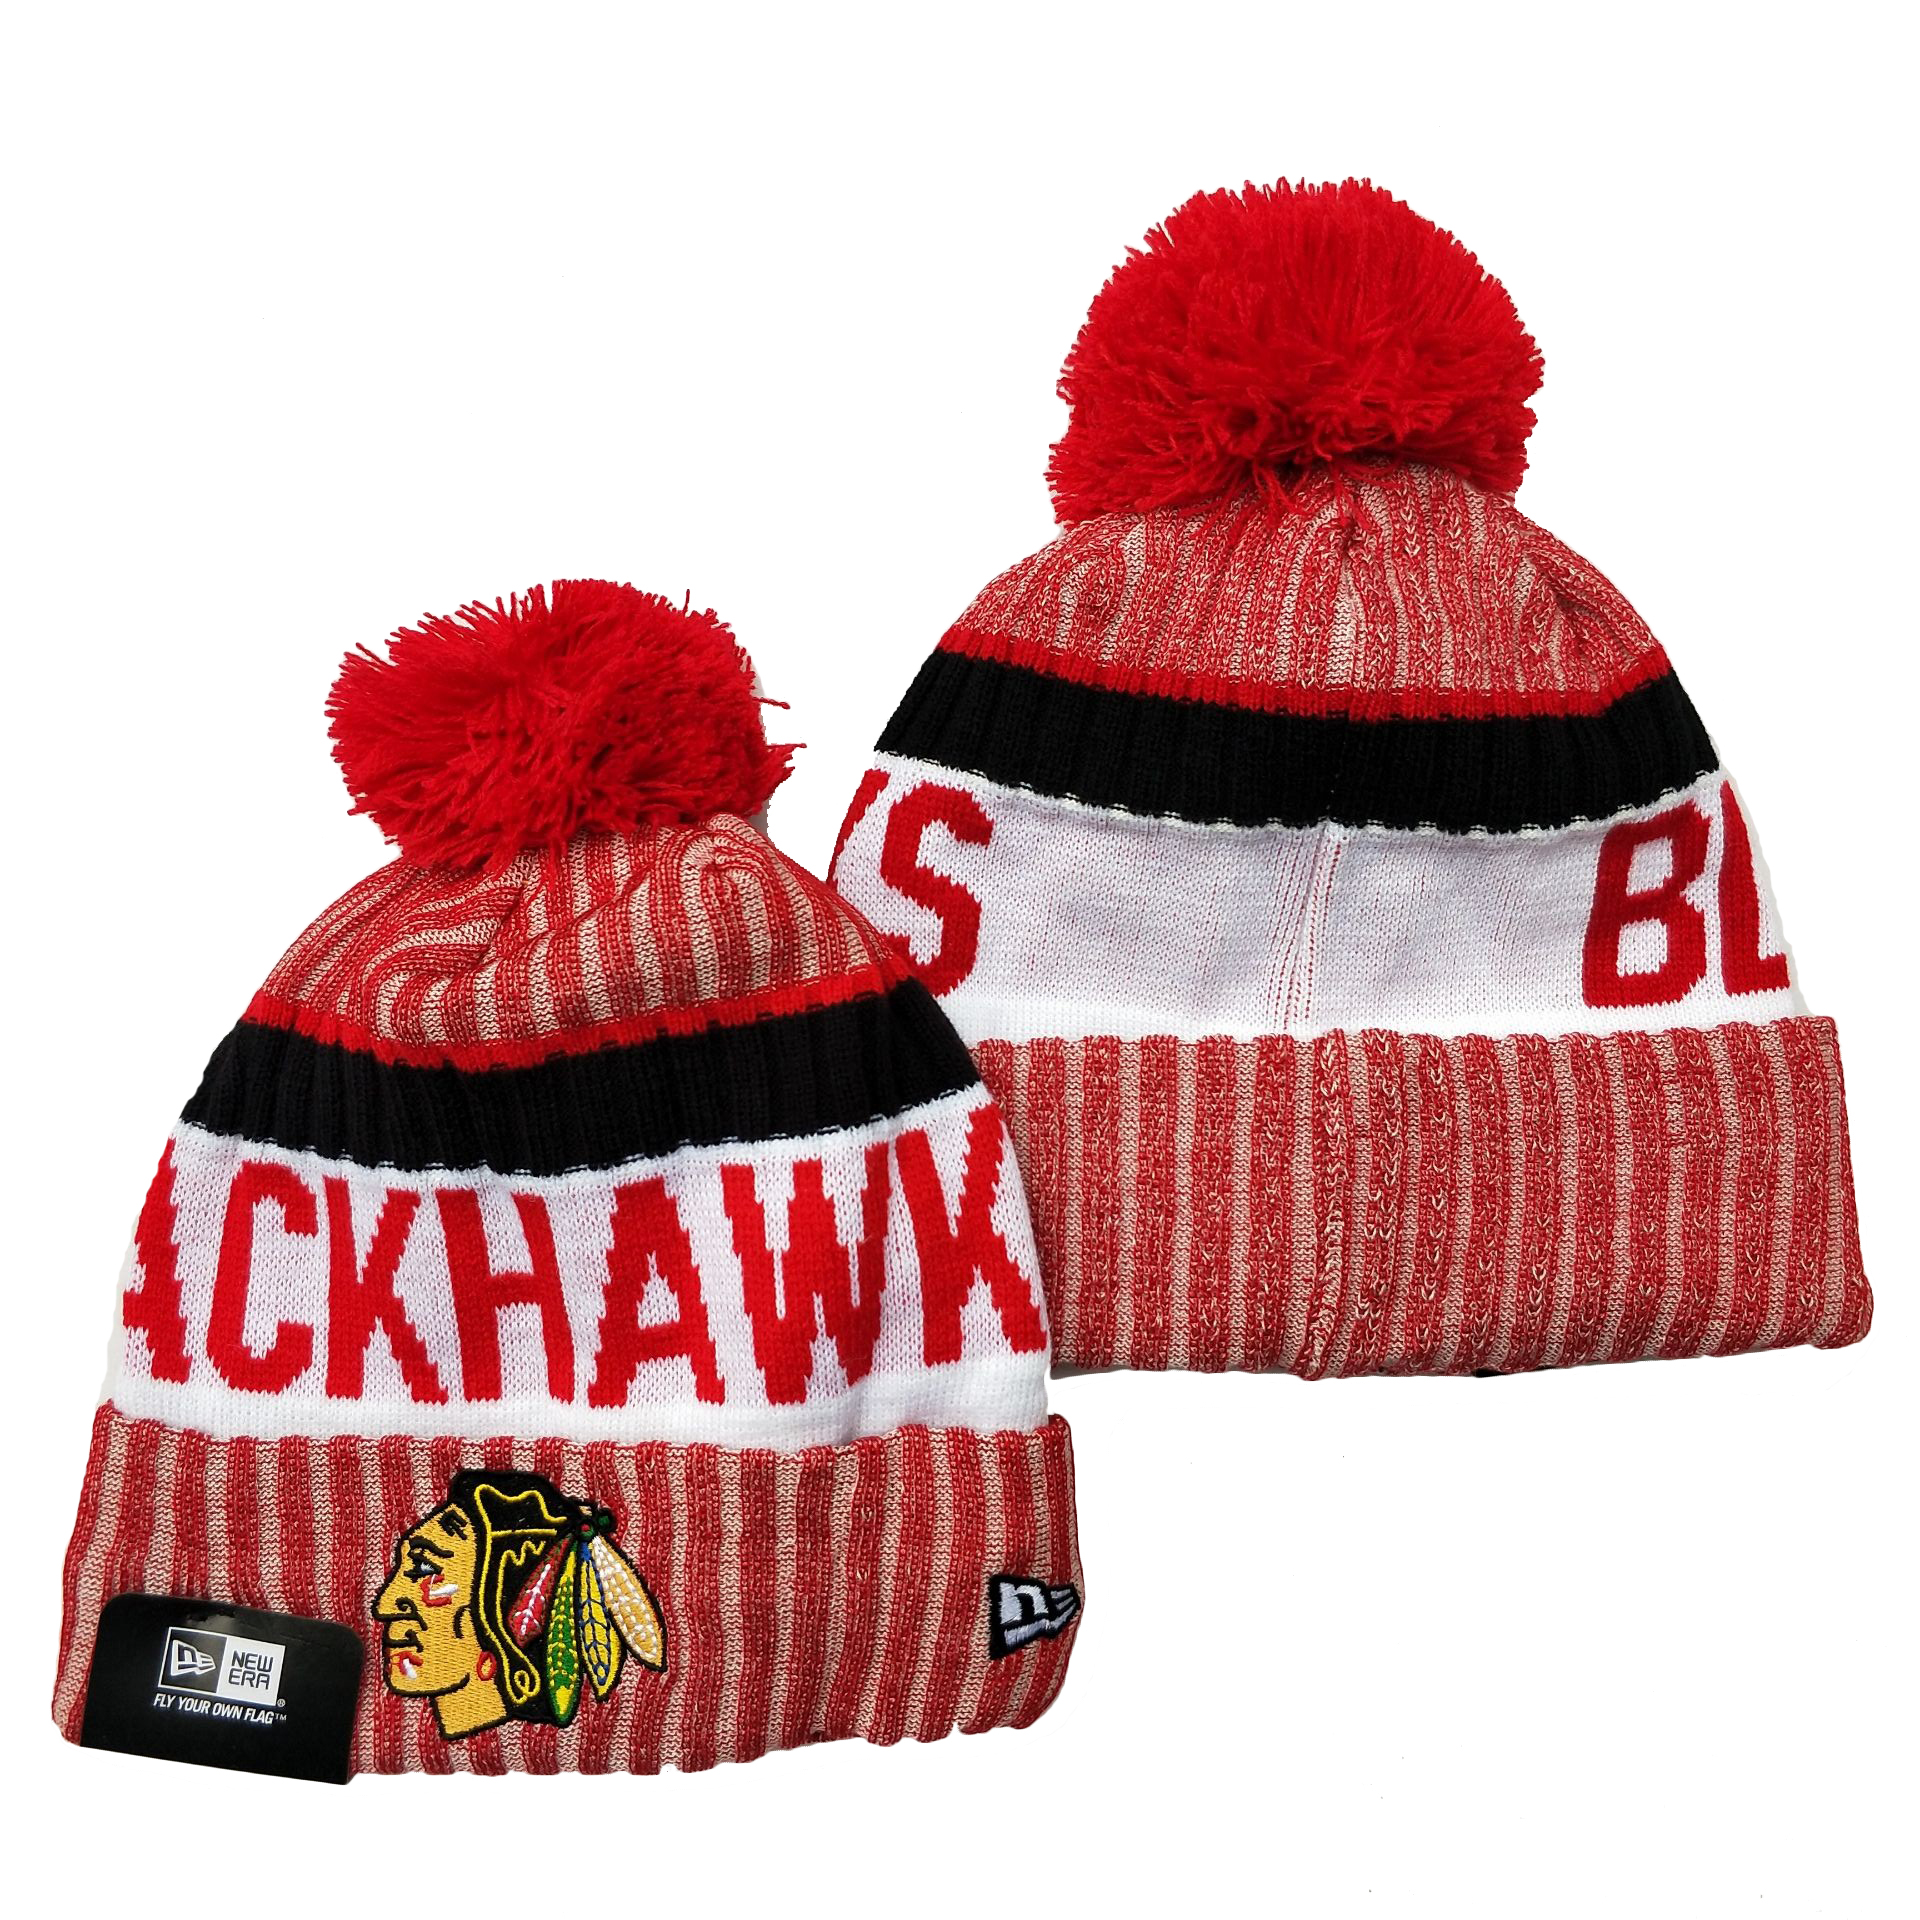 Blackhawks Team Logo Red Cuffed Knit Hat YD